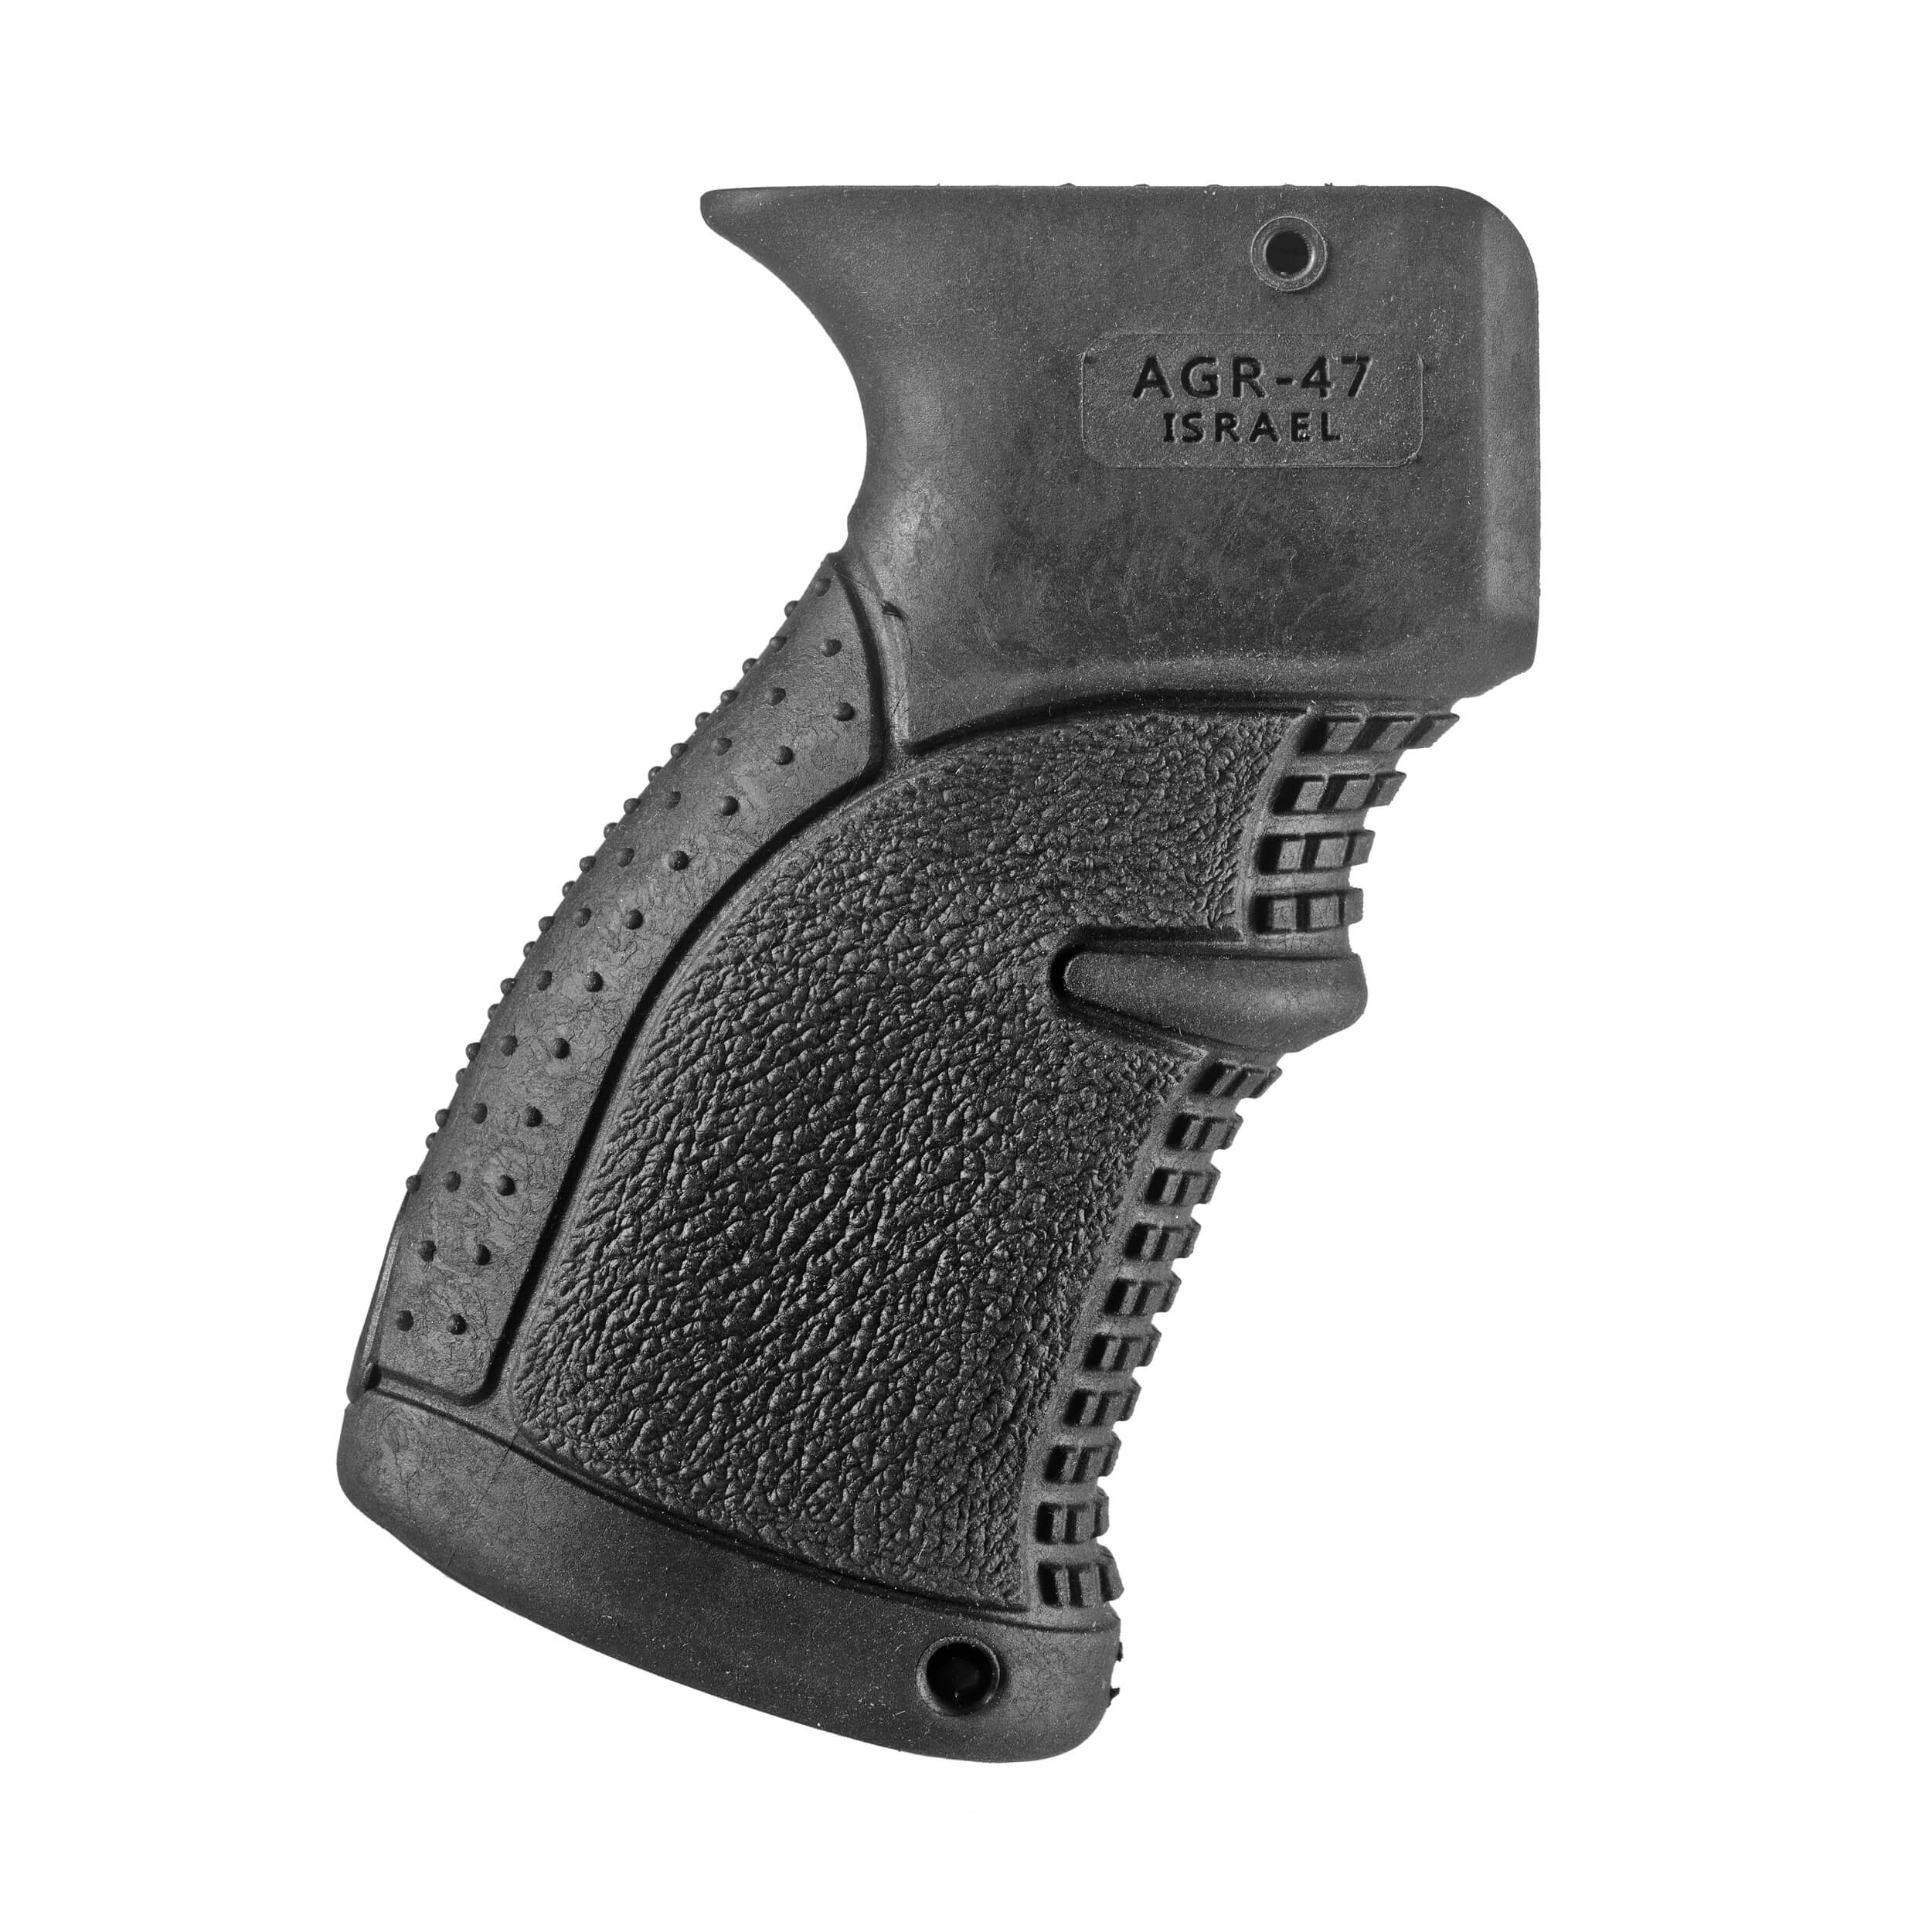 AGR-47 Rubberized Pistol Grip for AK-47 / 74